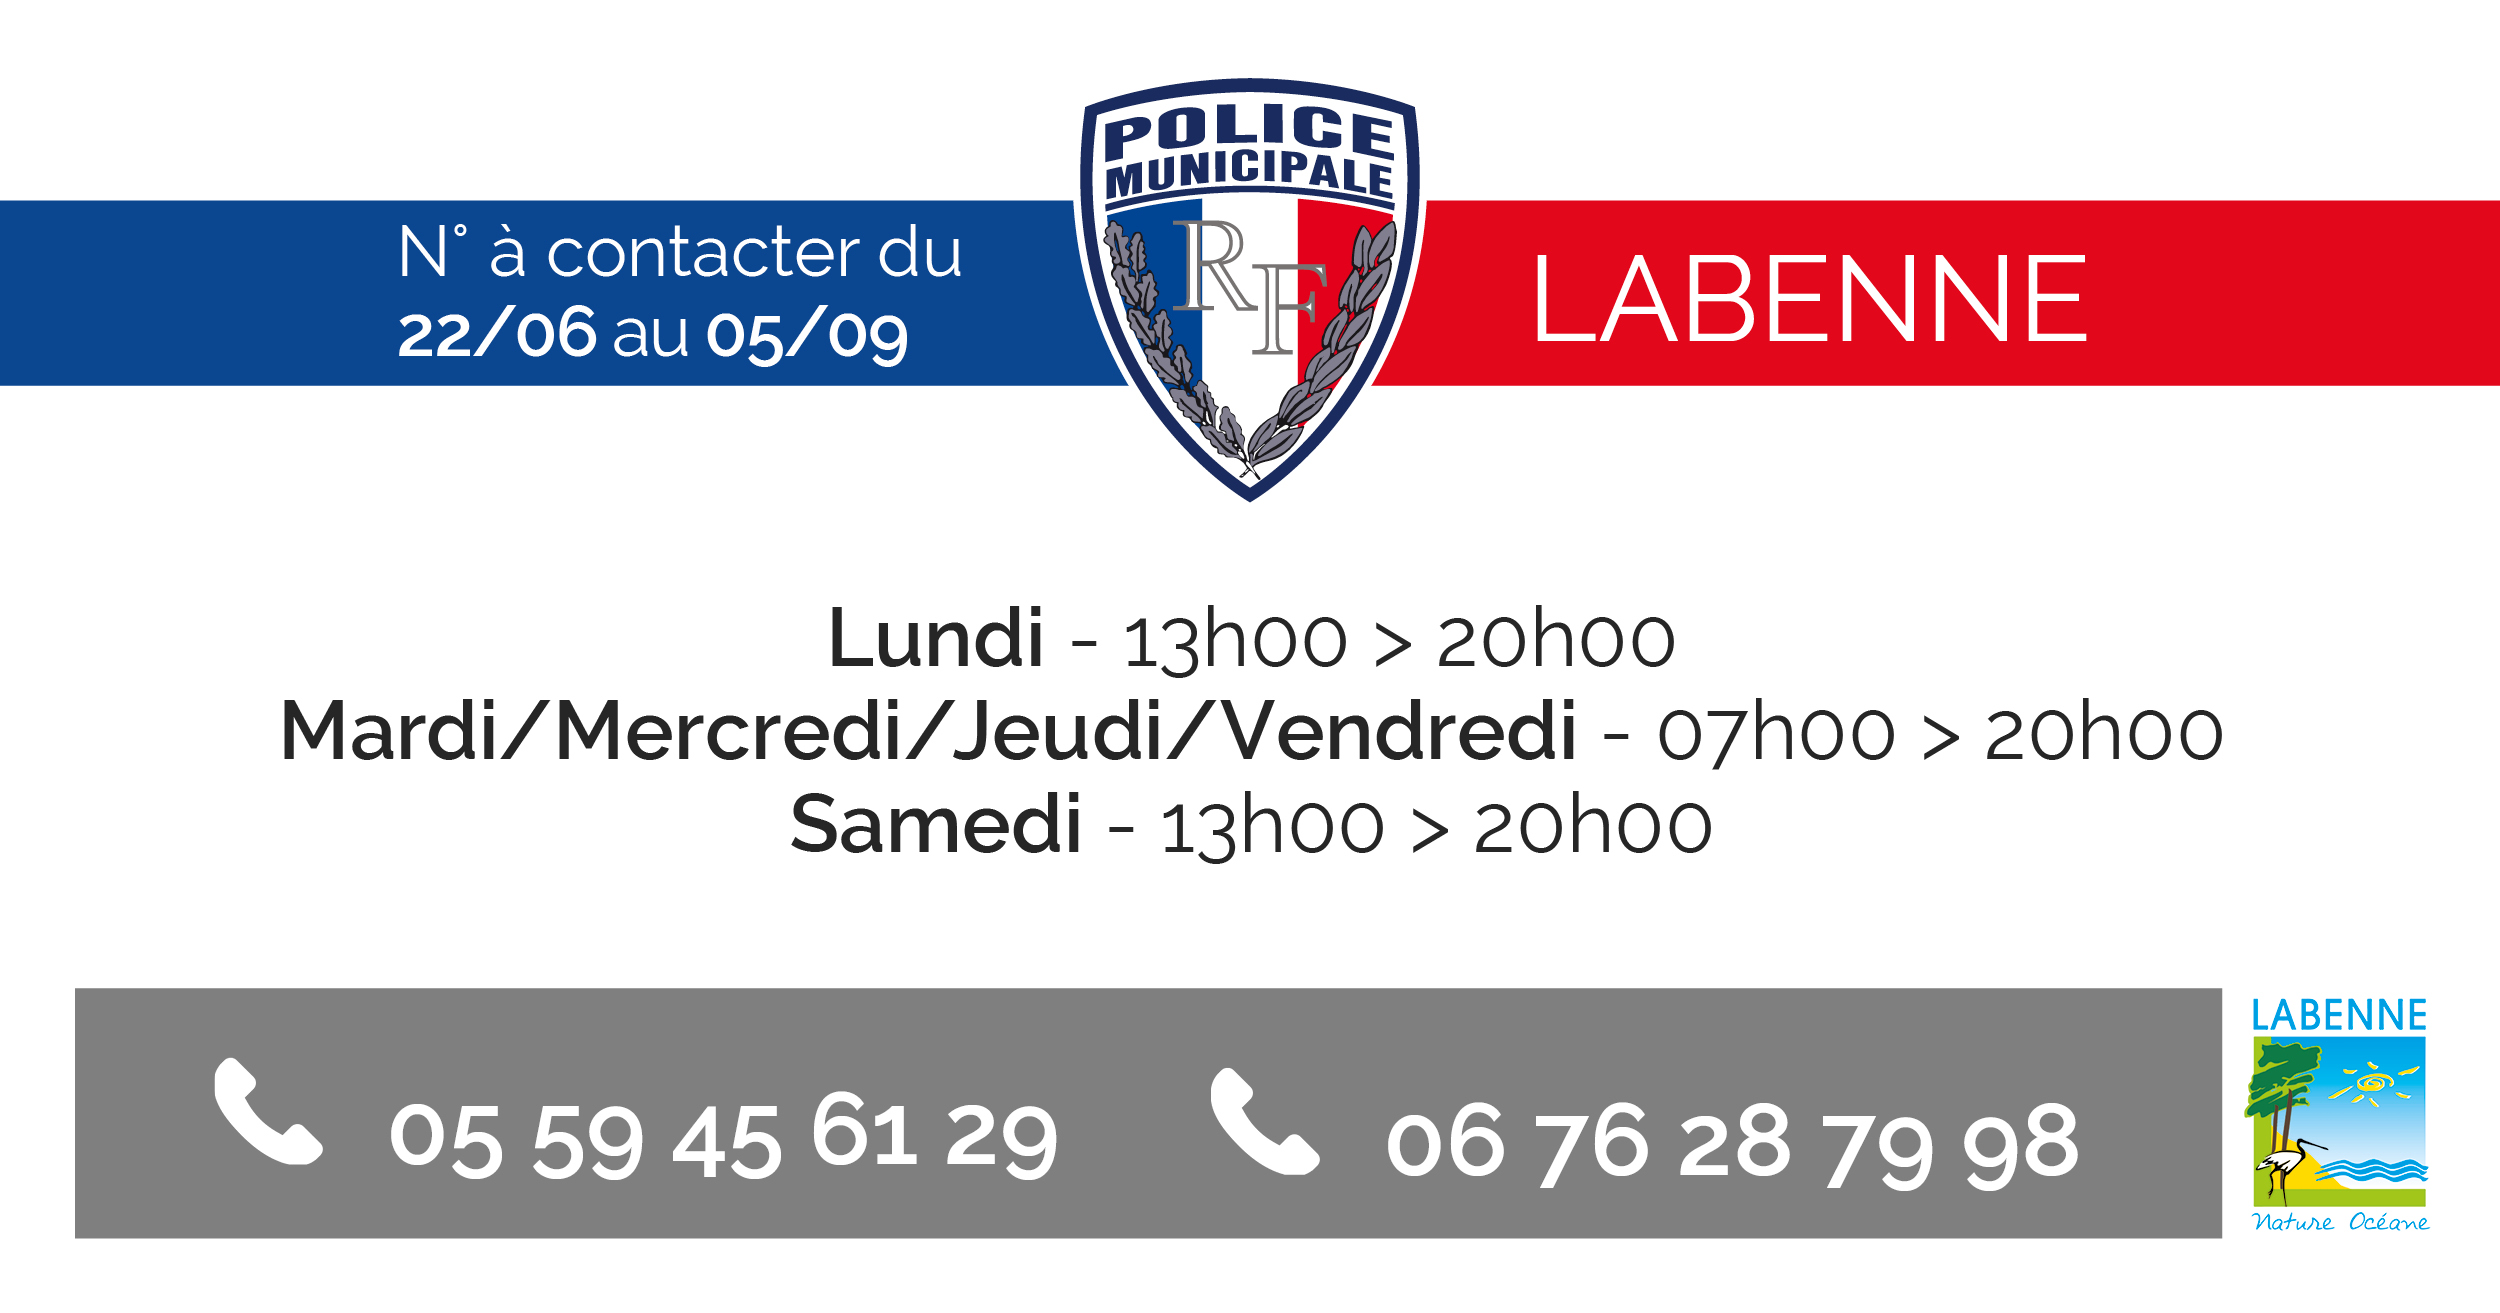 Nouveau numéro de téléphone Police Municipale de LABENNE 